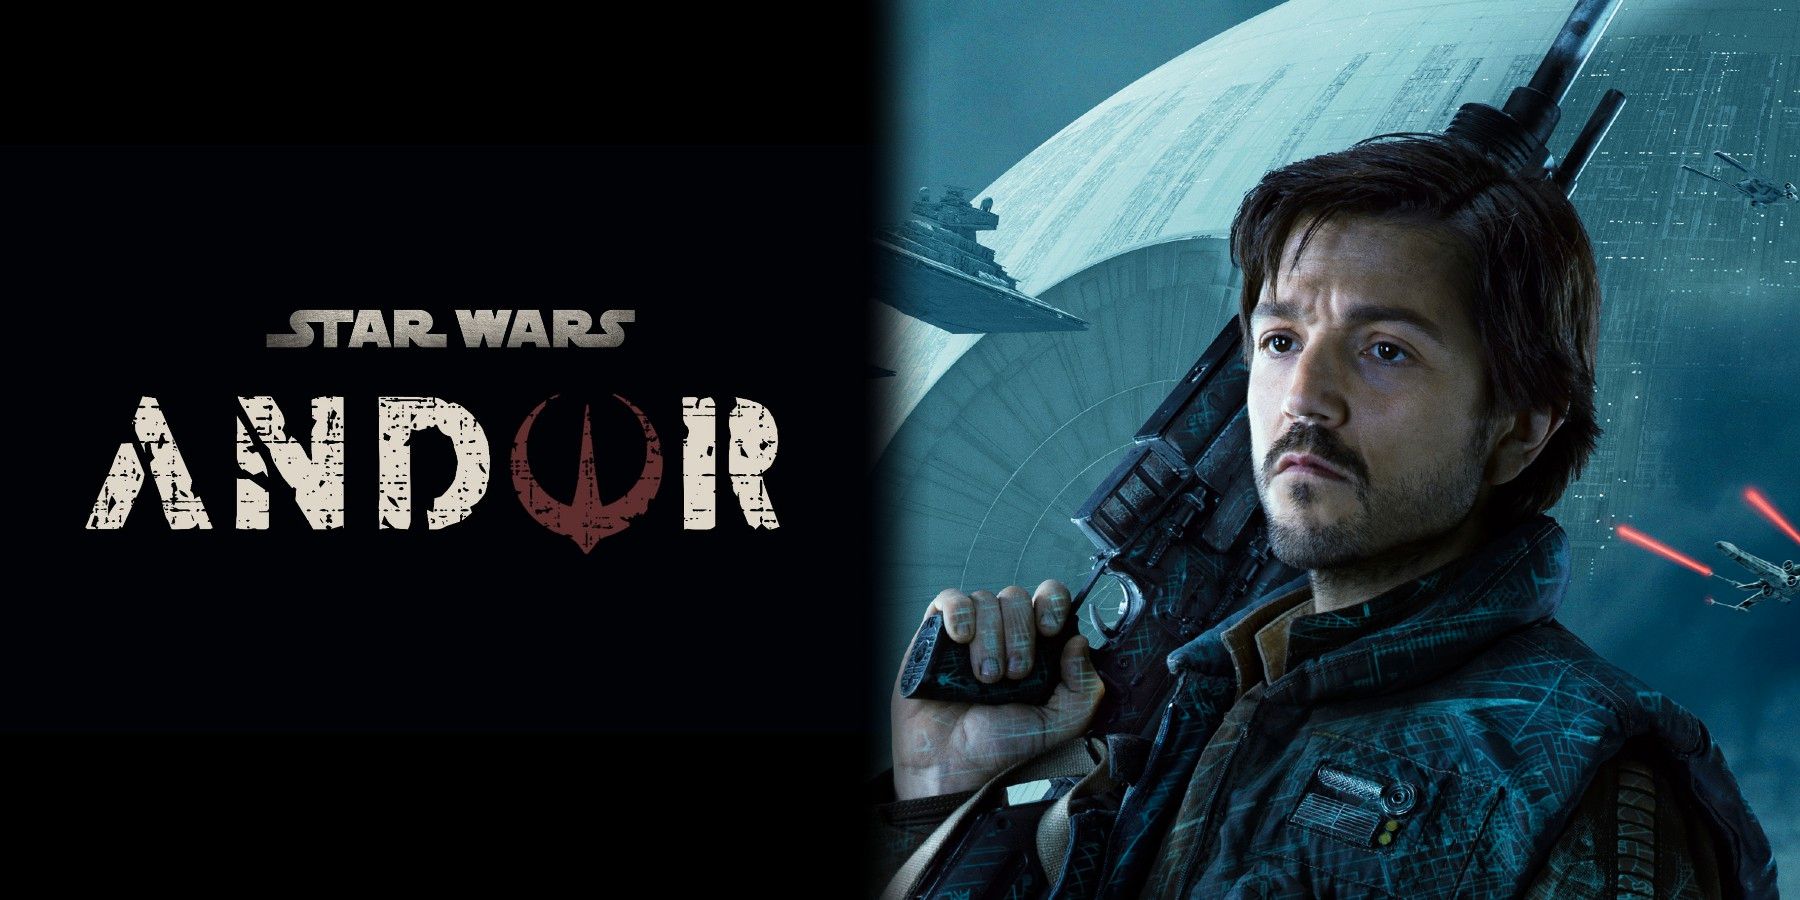 Star Wars: Andor Has Wrapped Shooting, kommer att innehålla ”Familiar Faces”